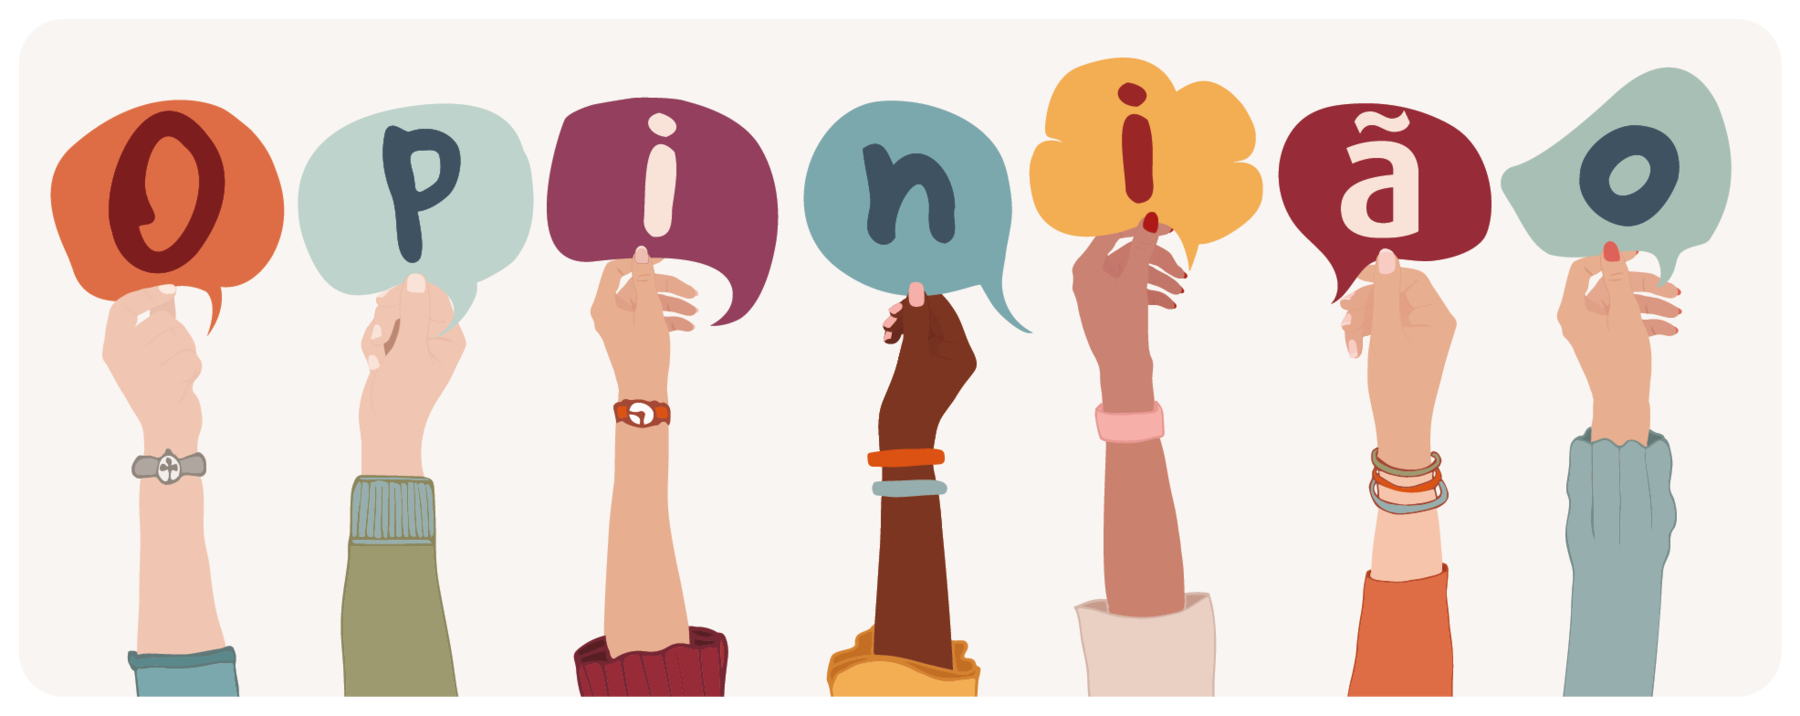 Ilustração. Sete braços de pessoas levantados, com roupas e acessórios de cores diferentes. Cada um segura na mão um balão de fala, cada um de uma cor, formando a palavra: OPINIÃO.